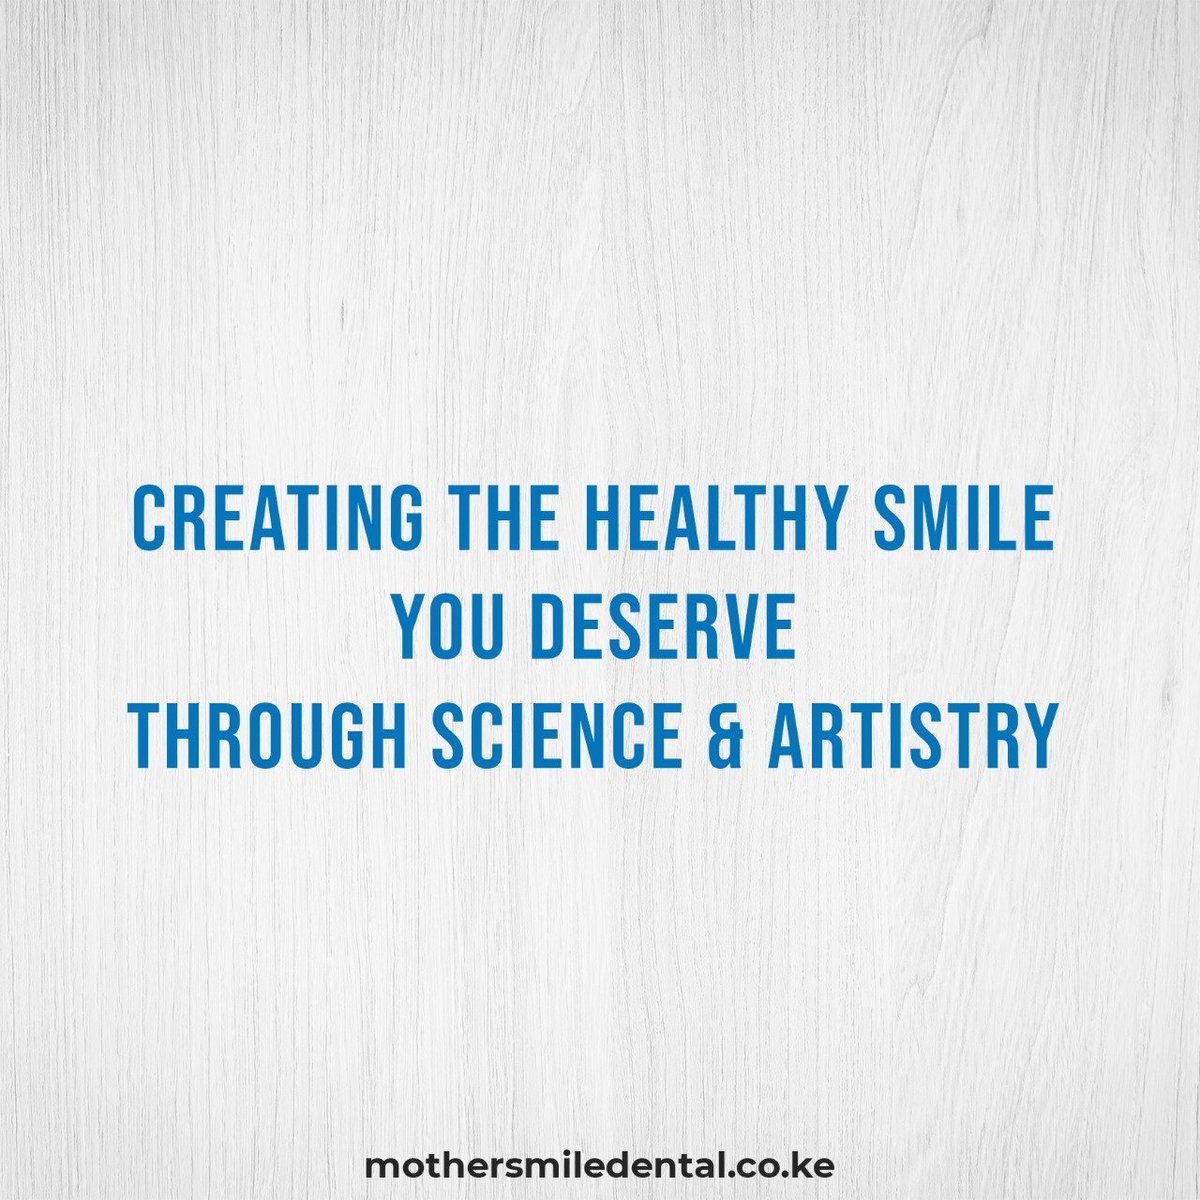 Where kindness and dentistry meet. MDC.

#dentalclinic #dentalvisit #weareopen #smile #dentalhygiene #explore #preventgumdisease #preventtoothloss #nairobi #mdc #mothersmile #visitus